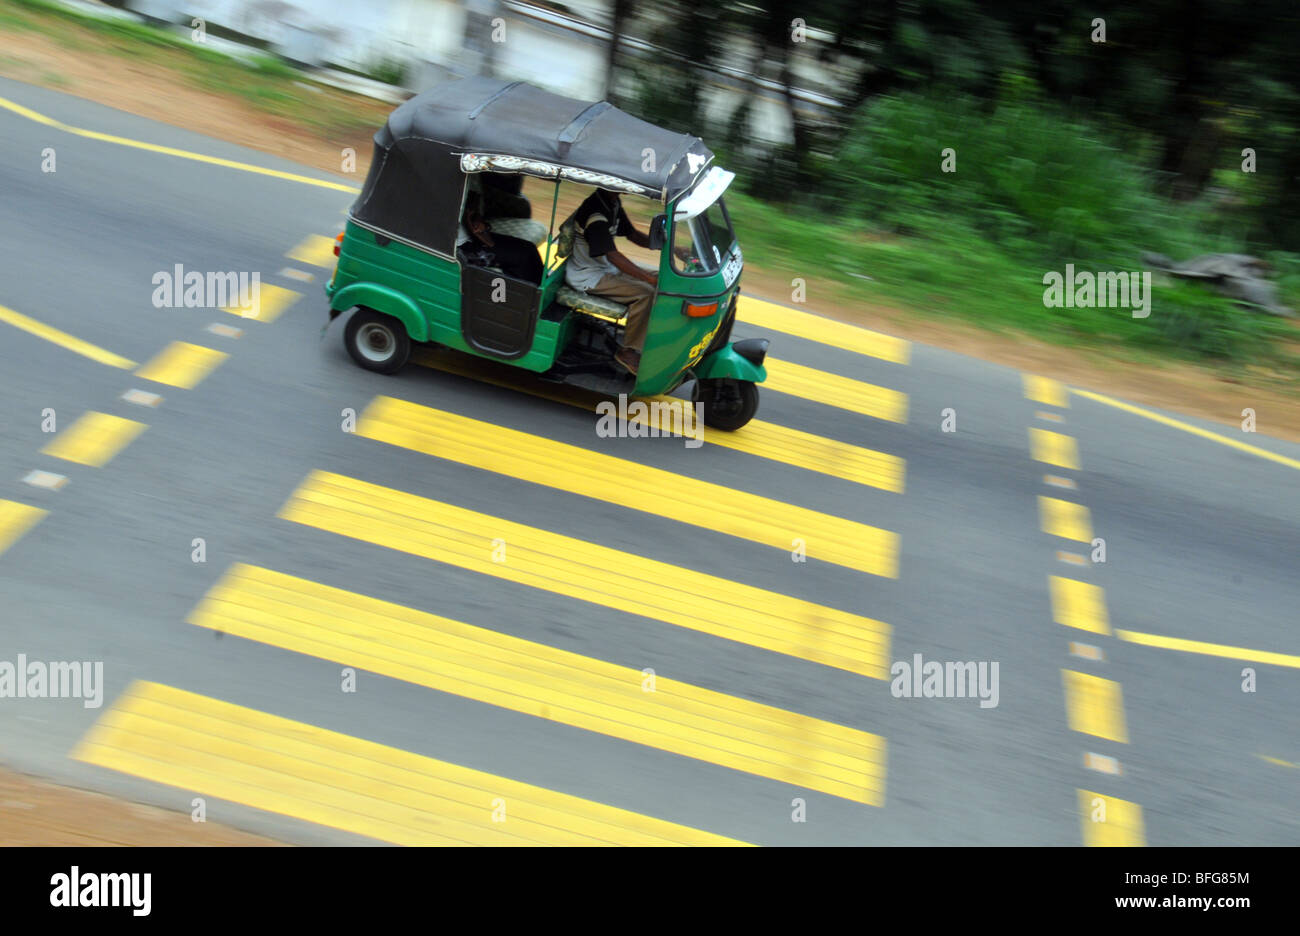 Tuk tuk or trishaw taxi in Sri Lanka, Sri Lanka Tuk-tuk Stock Photo